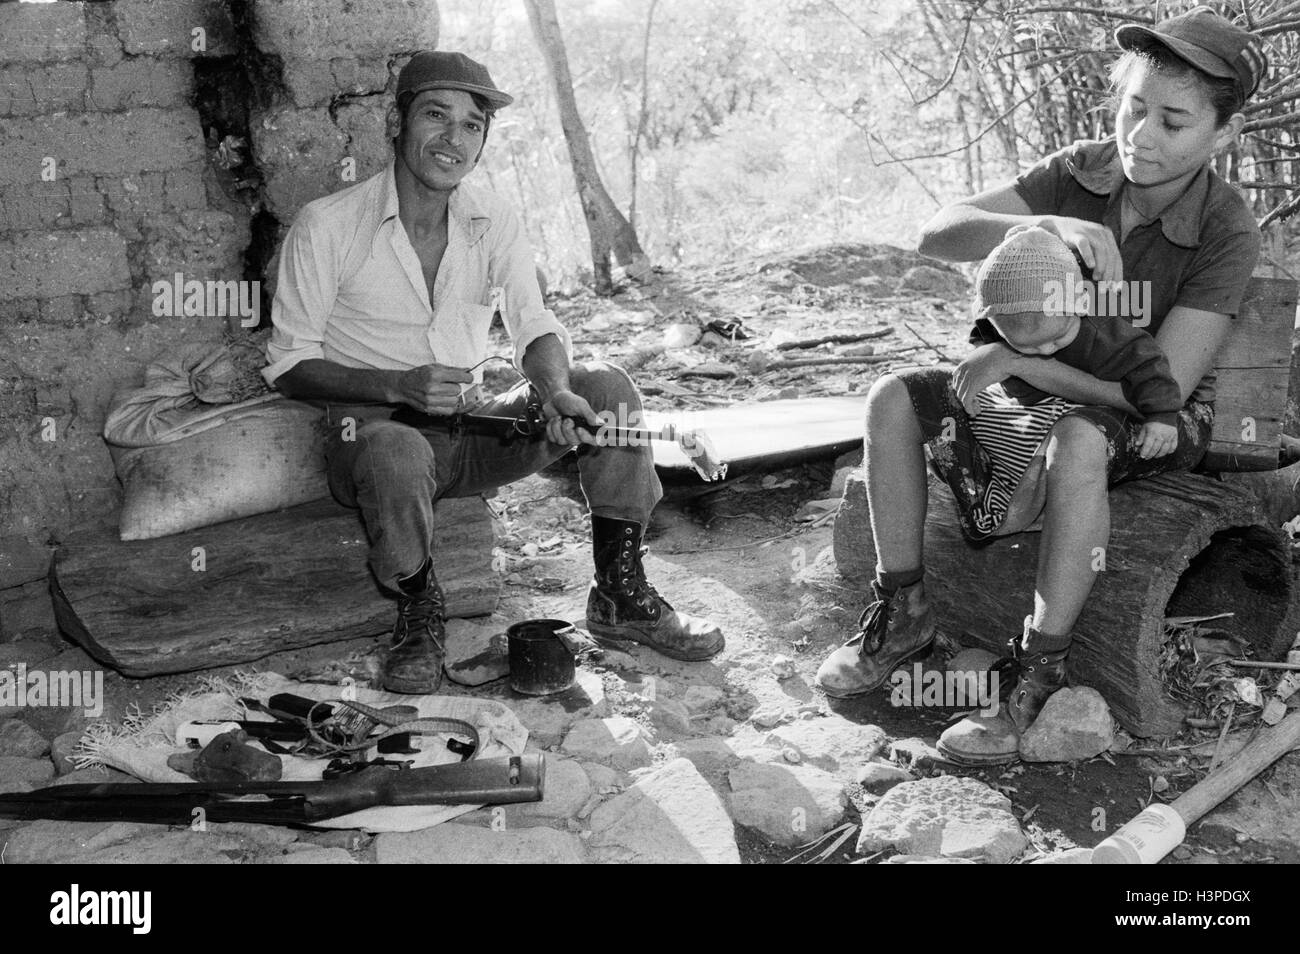 CHALATENANGO, EL SALVADOR, FEB 1984: - all'interno del FPL Guerrilla zone di controllo Evaristo, un membro della milizia PPL, pulizia la sua pistola. Foto Stock